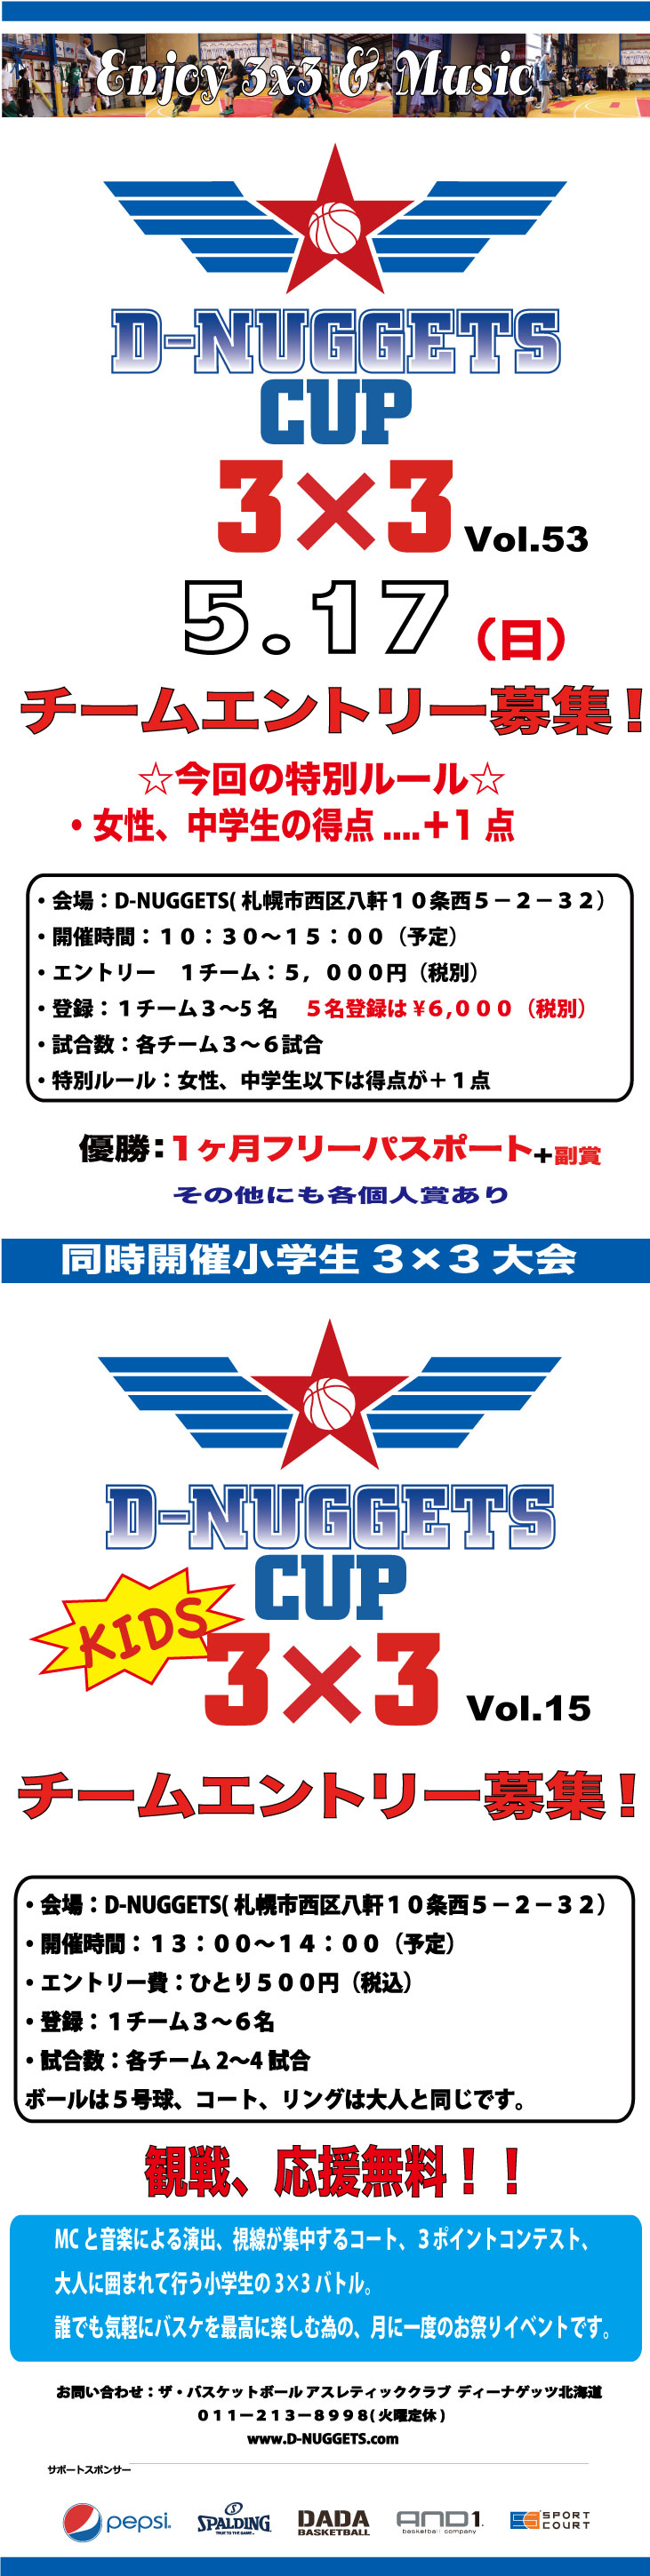 D-NUGGETS-CUP-Vol.53_2015.5.17.jpg